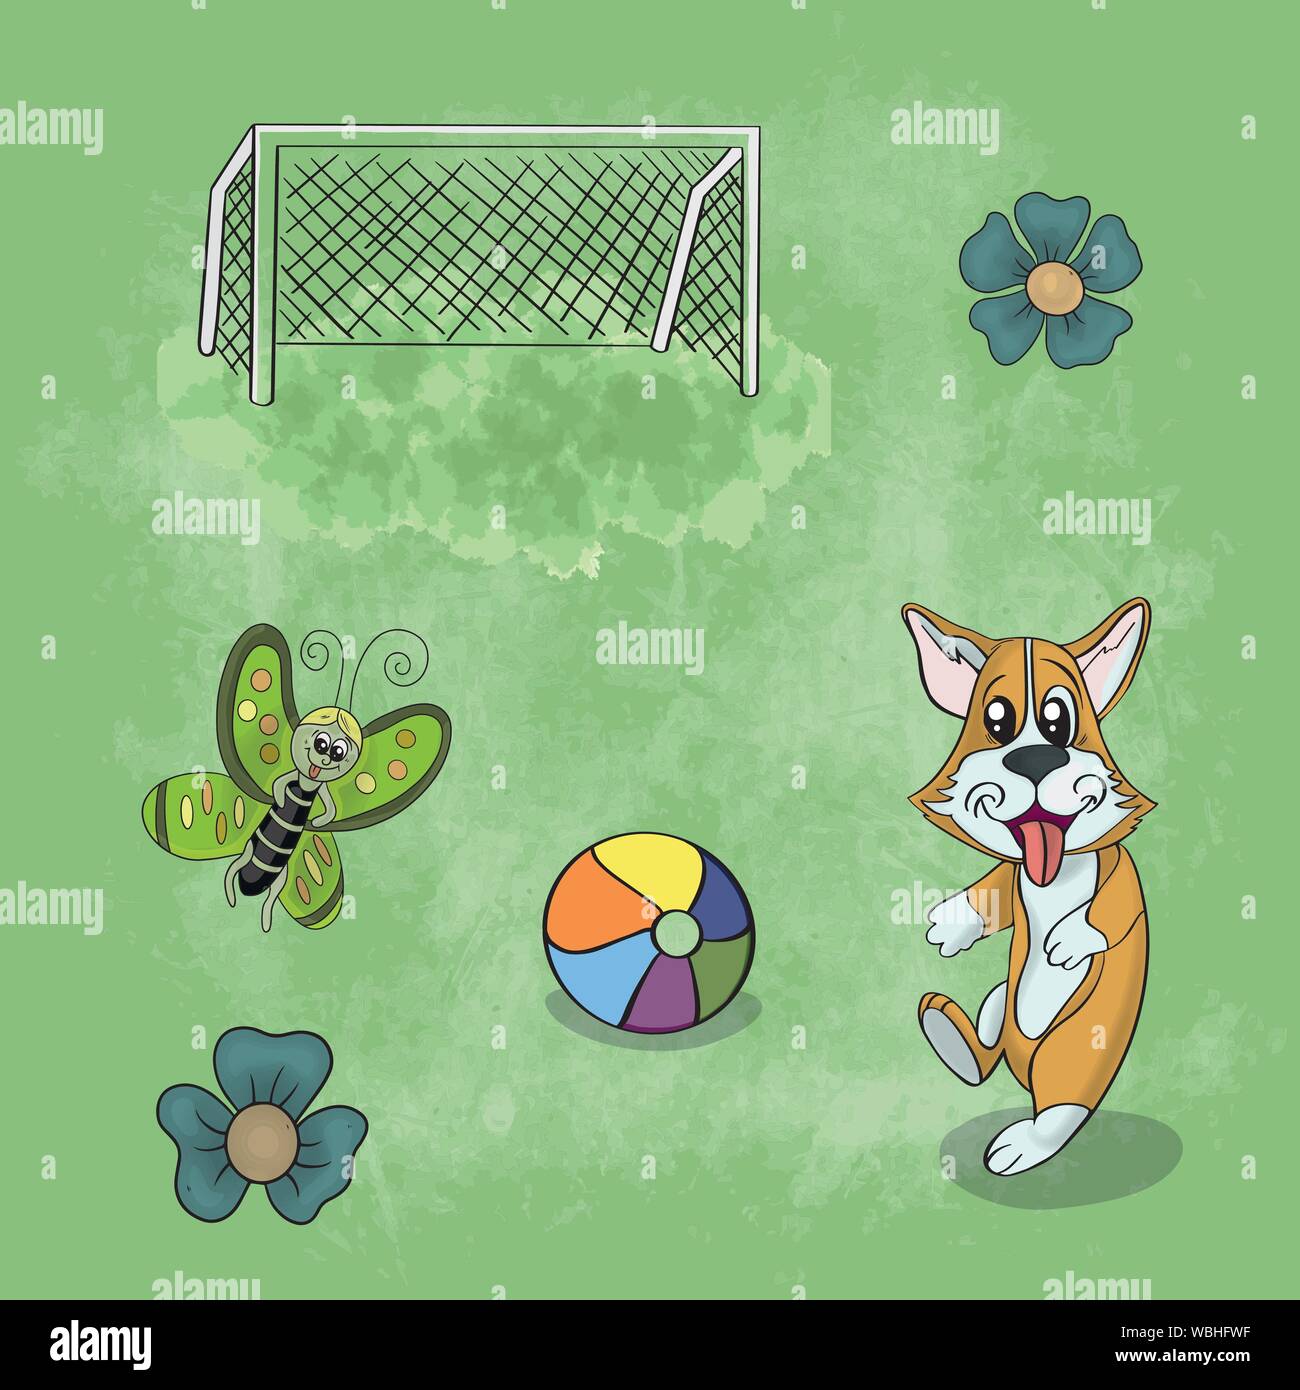 Illustrazione vettoriale di un animale Corgi cane giocando nella radura sull'erba tra fiori e giocattoli su uno sfondo a trama Illustrazione Vettoriale